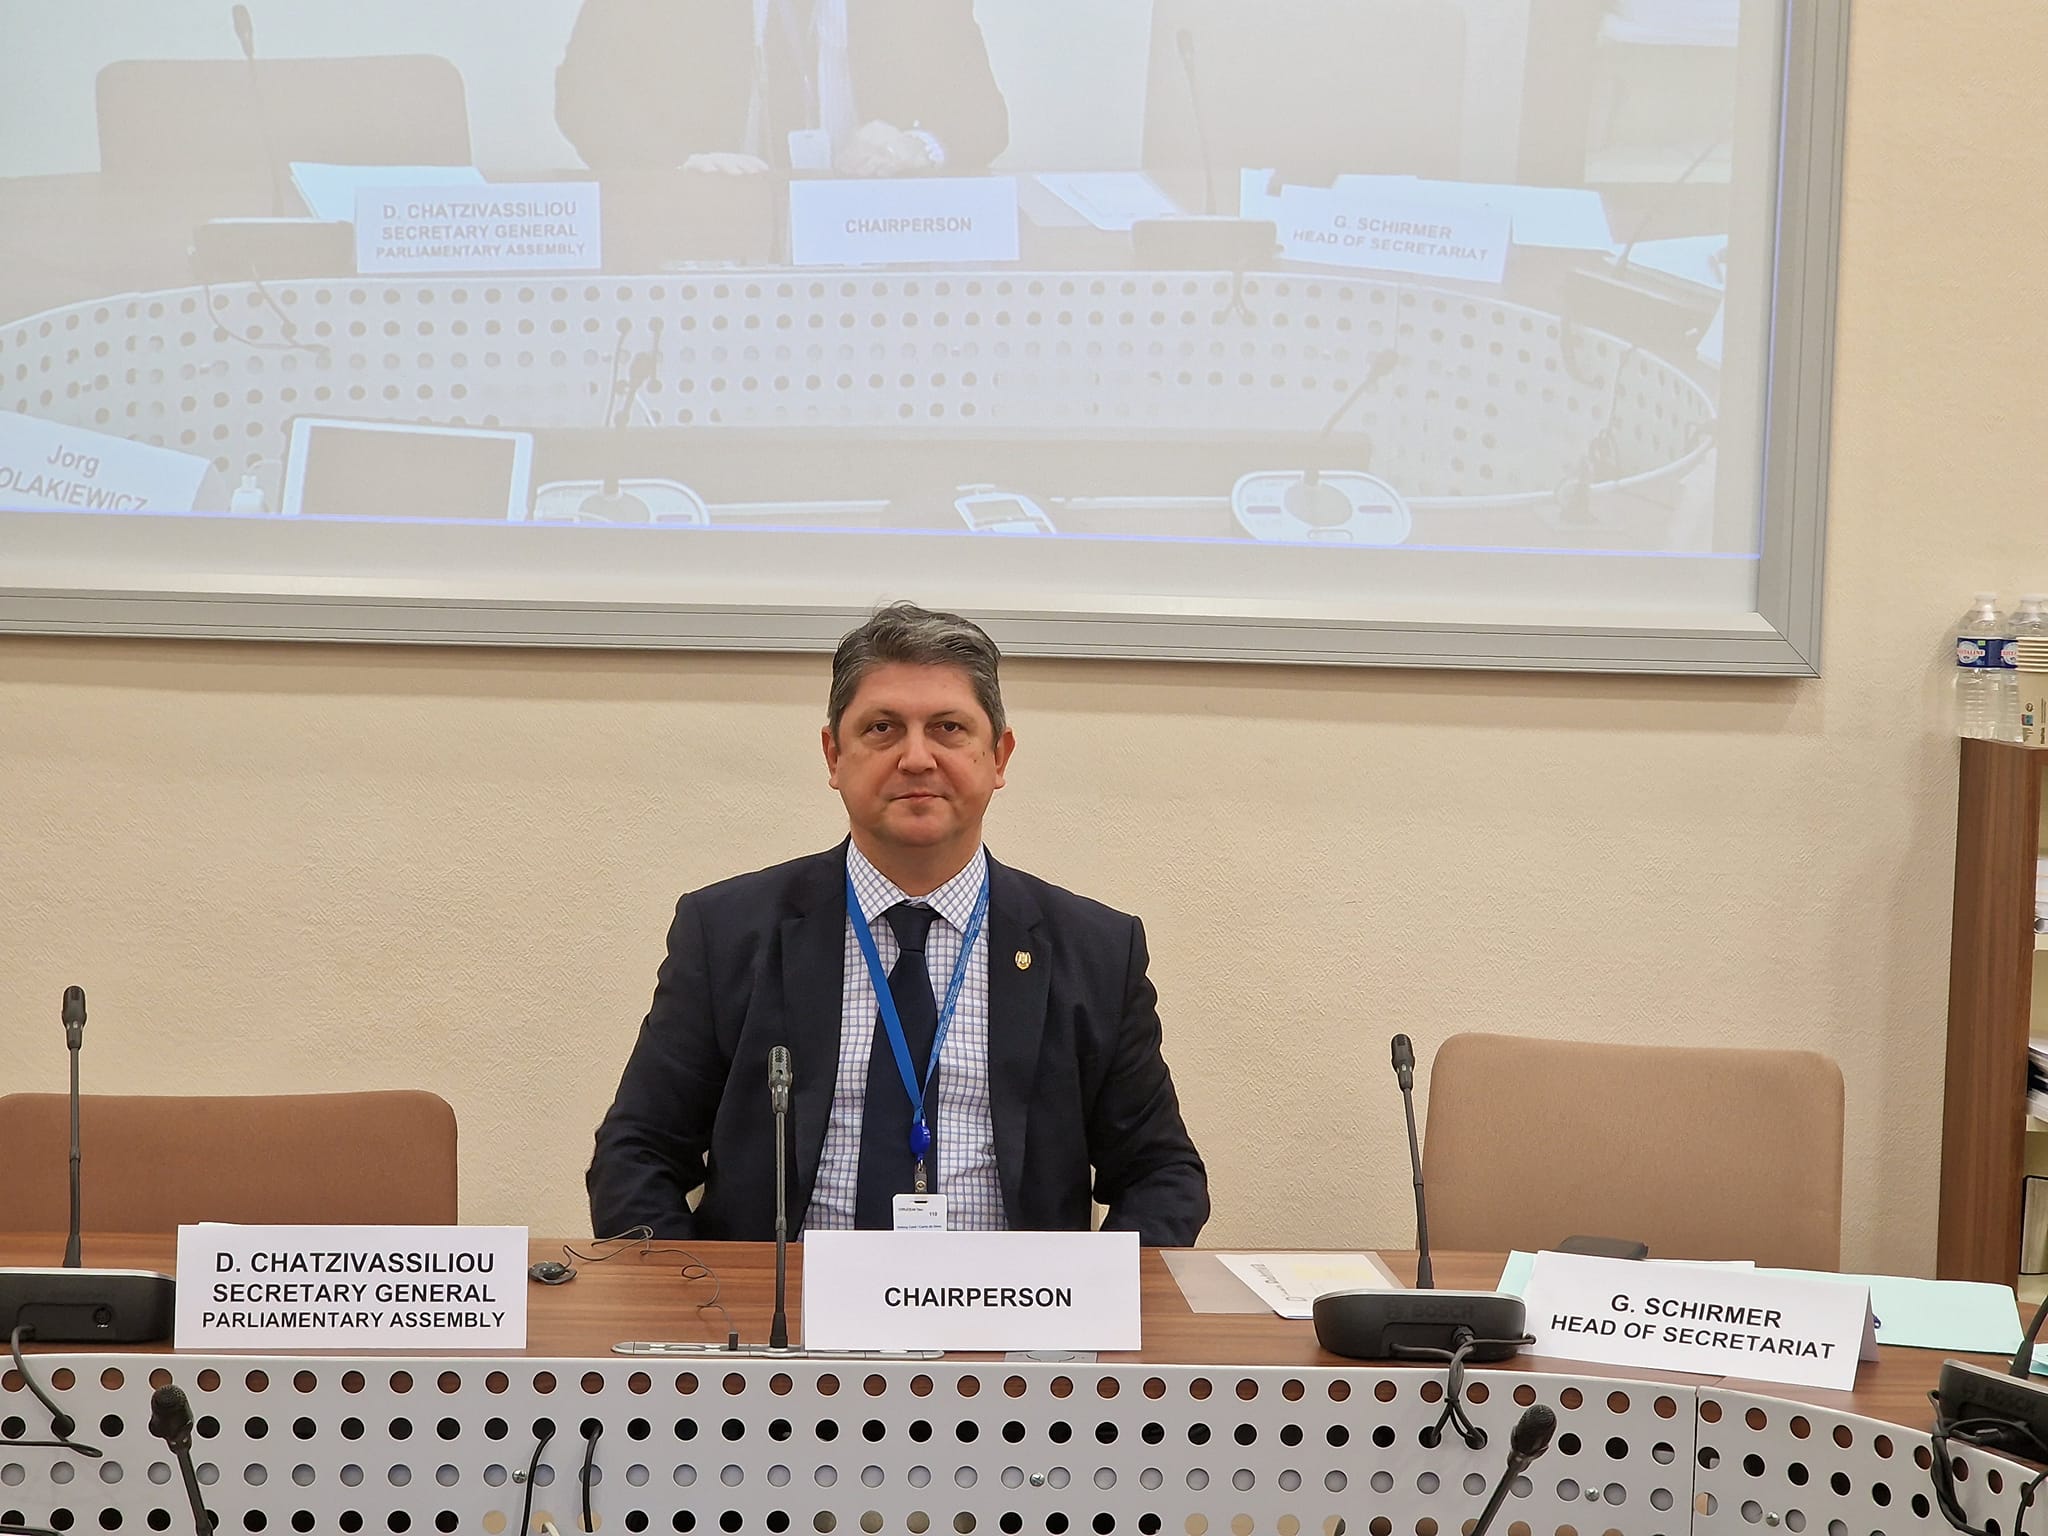 Senatorul PSD Titus Corlățean a condus Comisia parlamentară specială a Consiliului Europei pentru audierea și alegerea judecătorilor la Curtea Europeană a Drepturilor Omului. Parlamentarul român este președintele acestei Comisii extrem de importante de la nivel european.